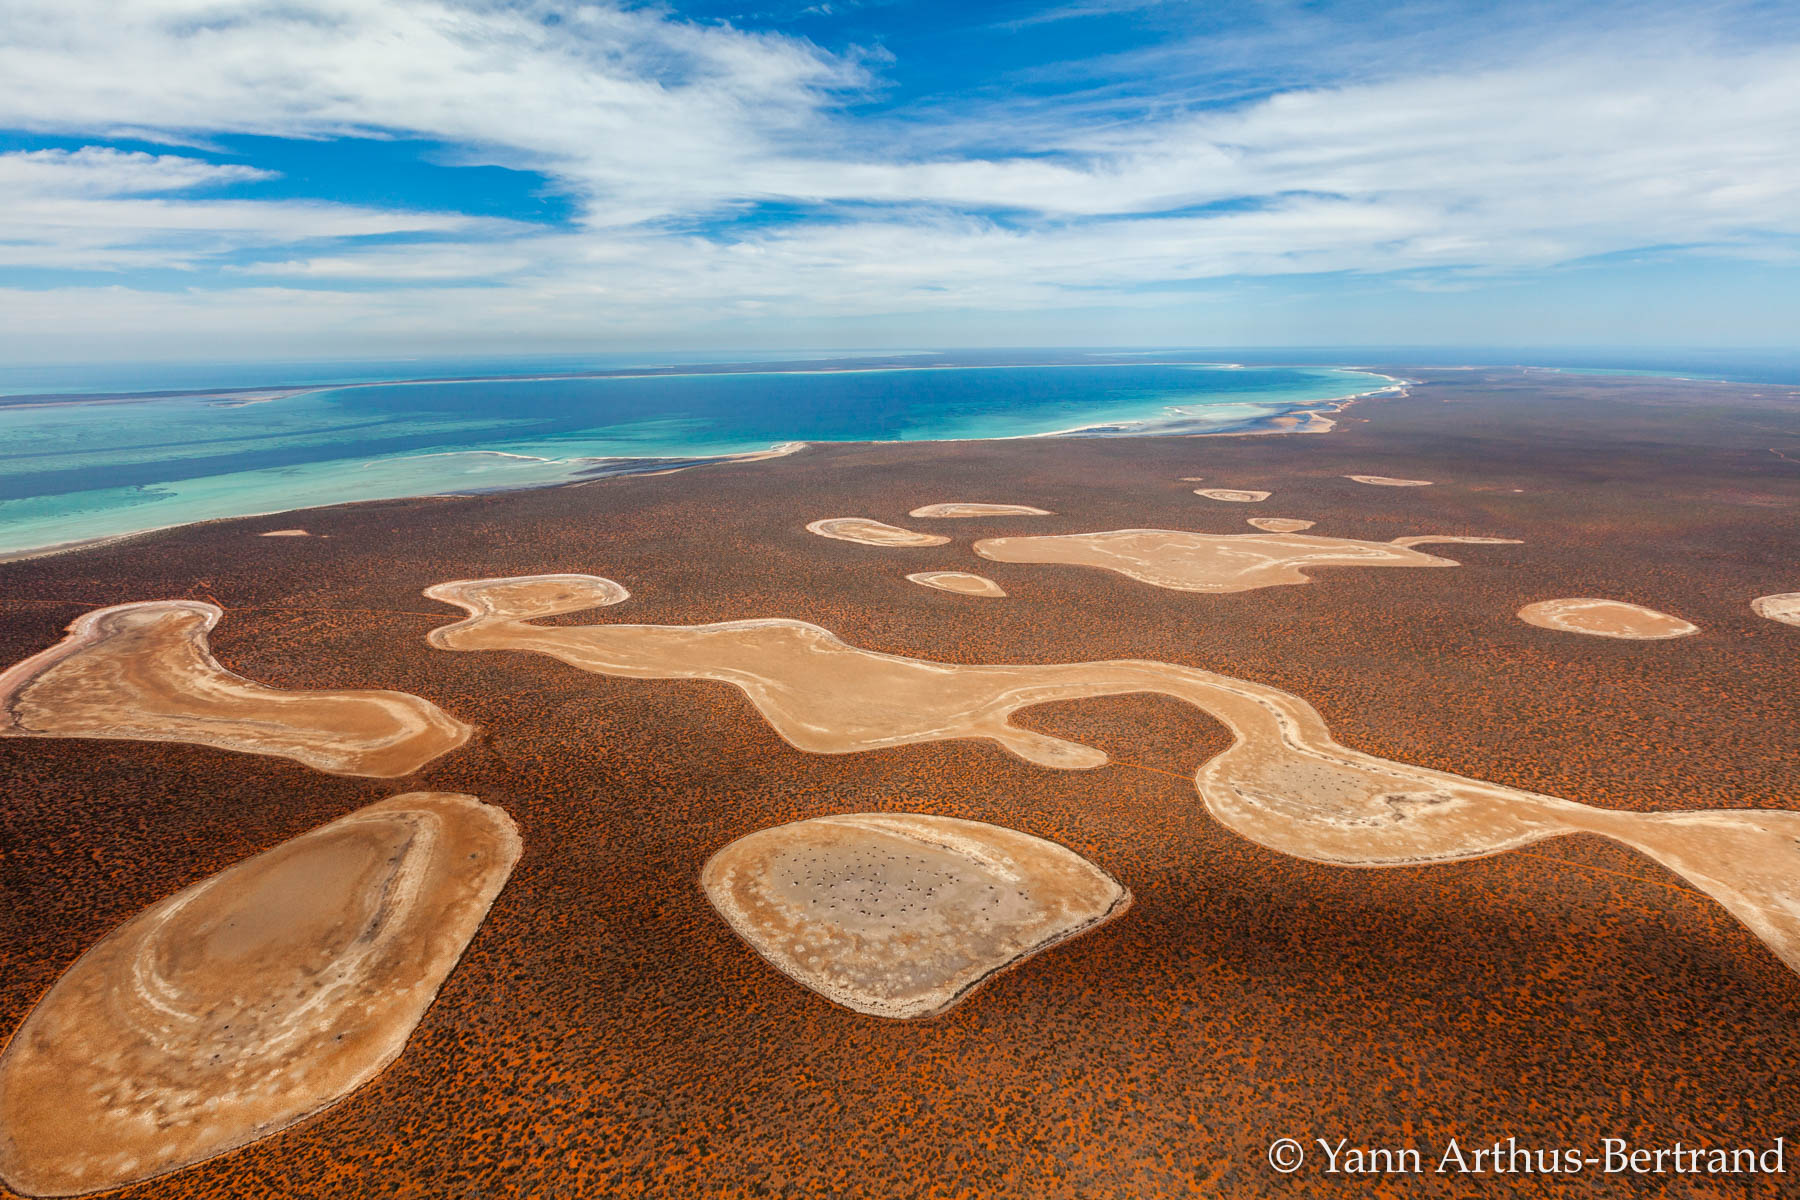 La péninsule de Péron est une maigre bande de terre située dans la baie Shark, à l'ouest de l'Australie. Elle est parsemée de petits lacs salins appelés « birridas » qui s'évaporent à l'arrivée des beaux jours. Sur cette vue aérienne, on peut voir les creux laissés par la disparition de l'eau.© Yann Arthus-Bertrand, tous droits réservés